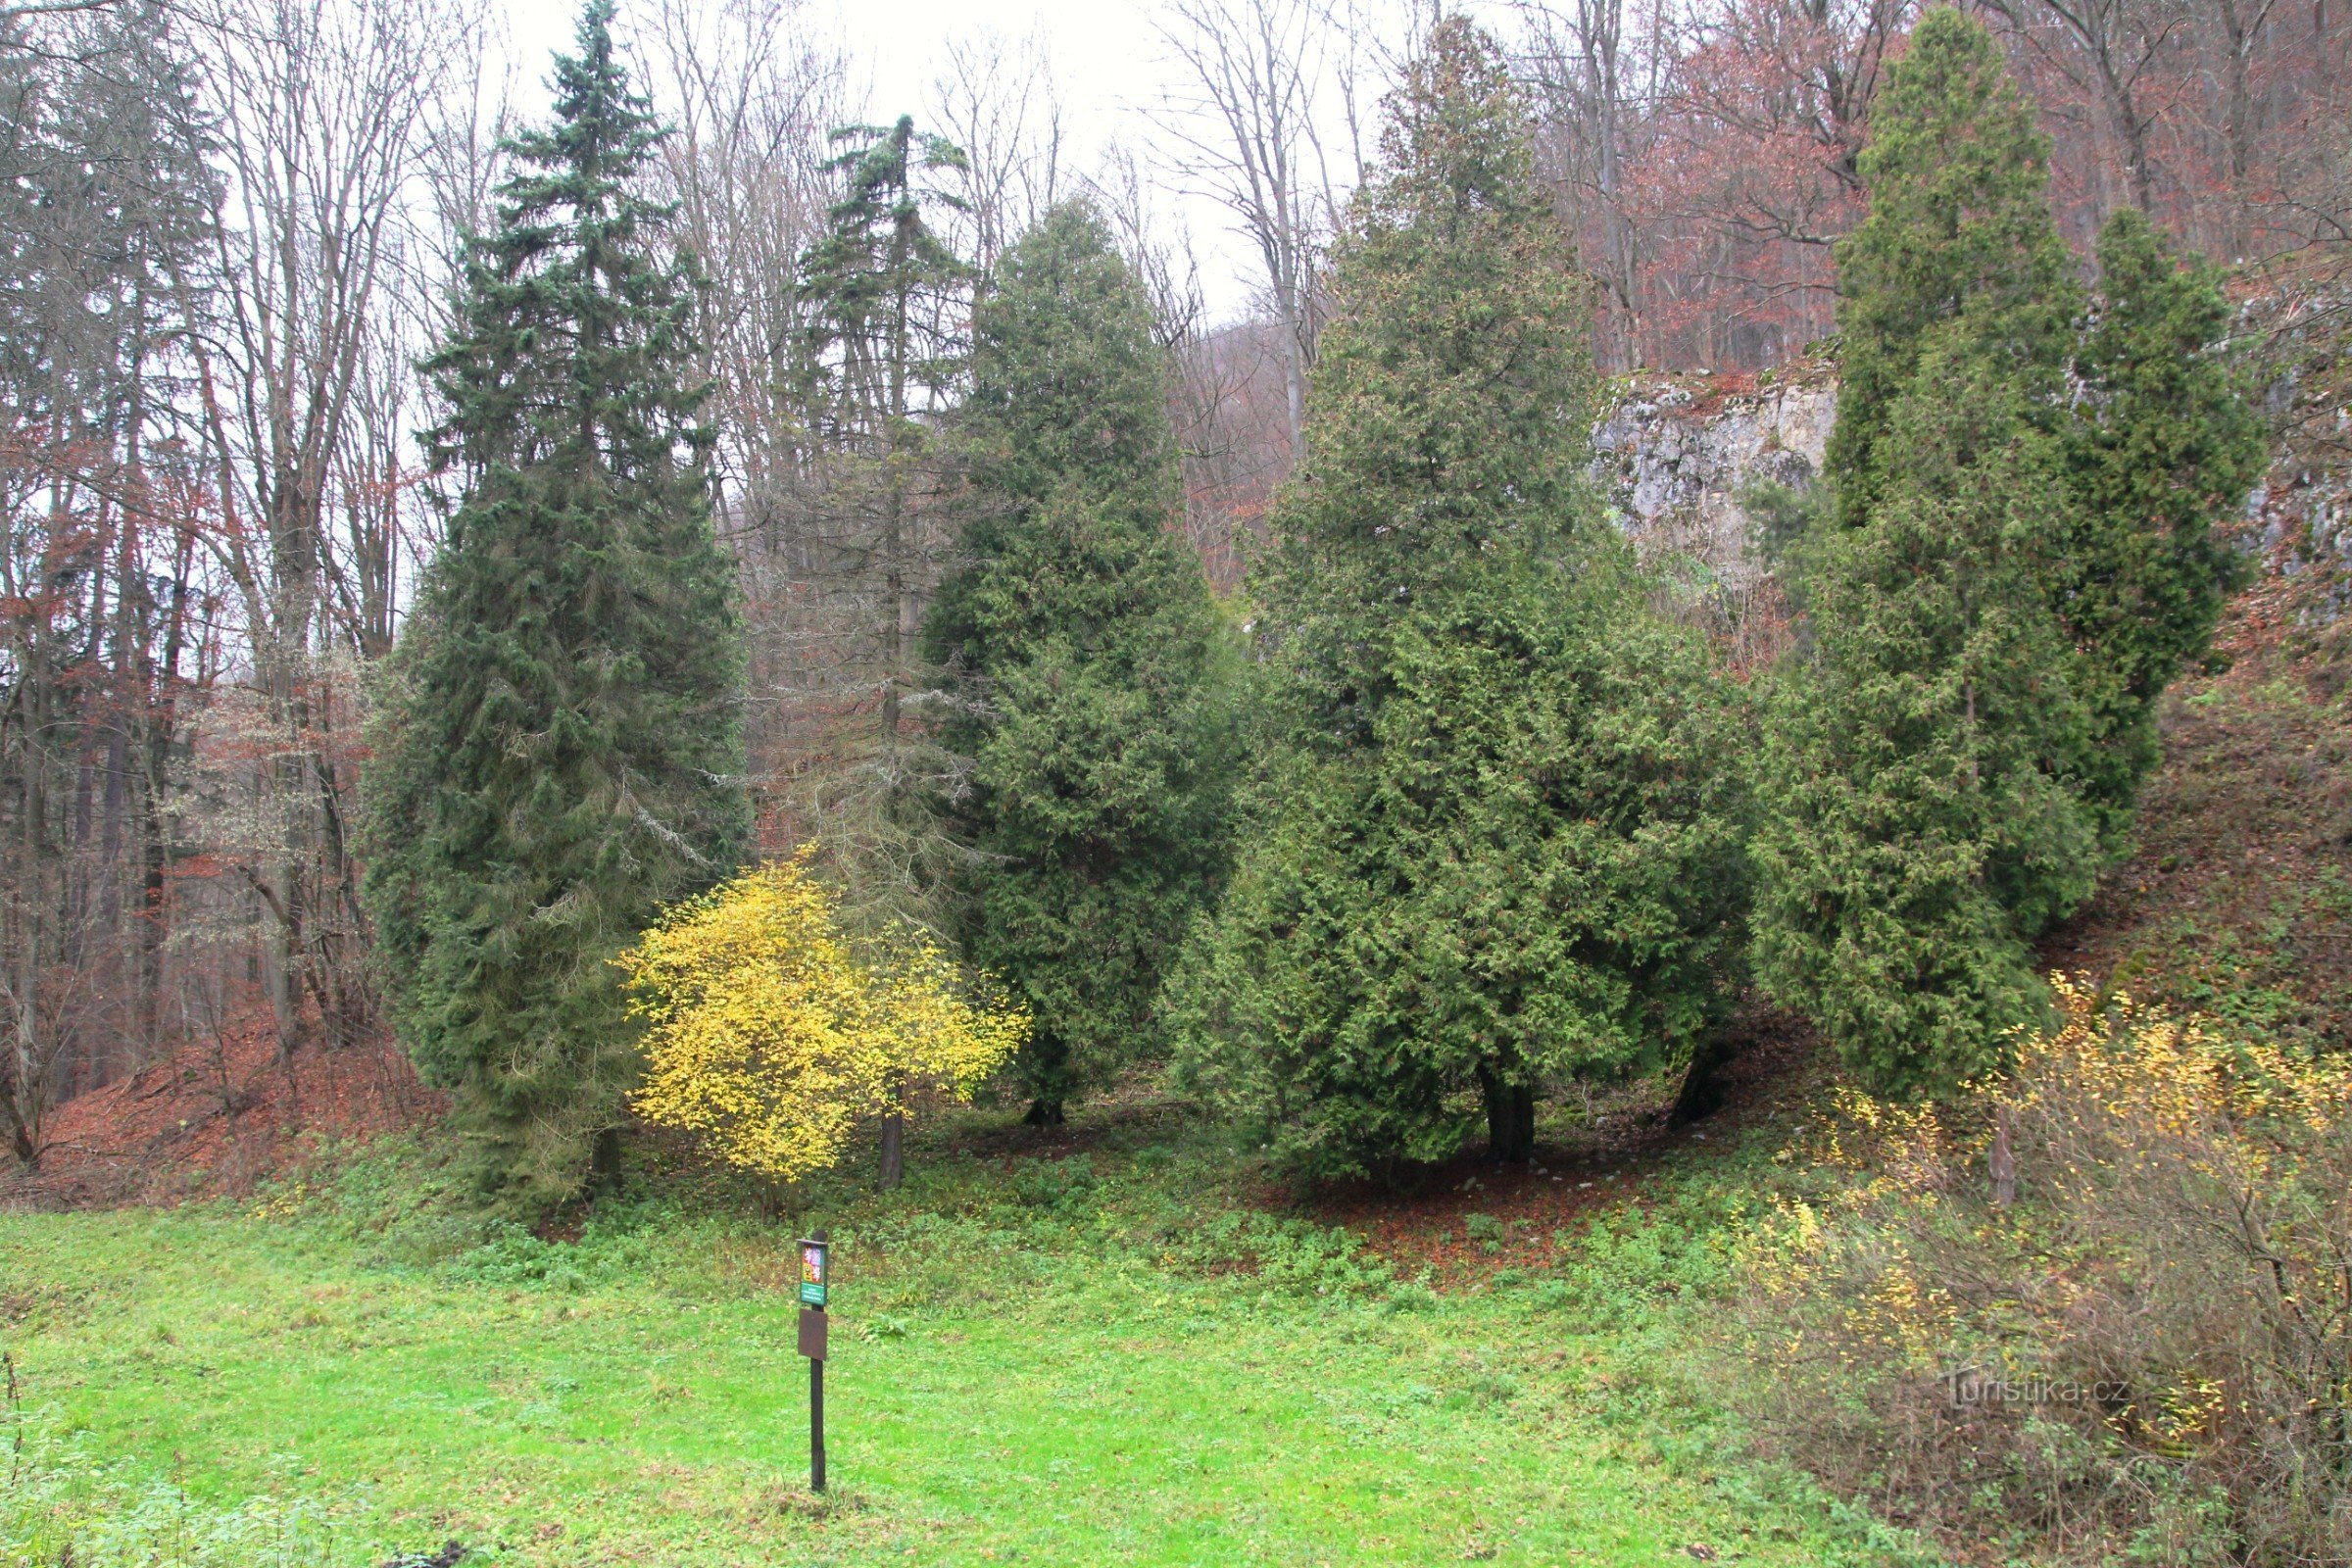 チェスカ記念碑の下のパドゥッチ渓谷のふもとにある観賞用の木